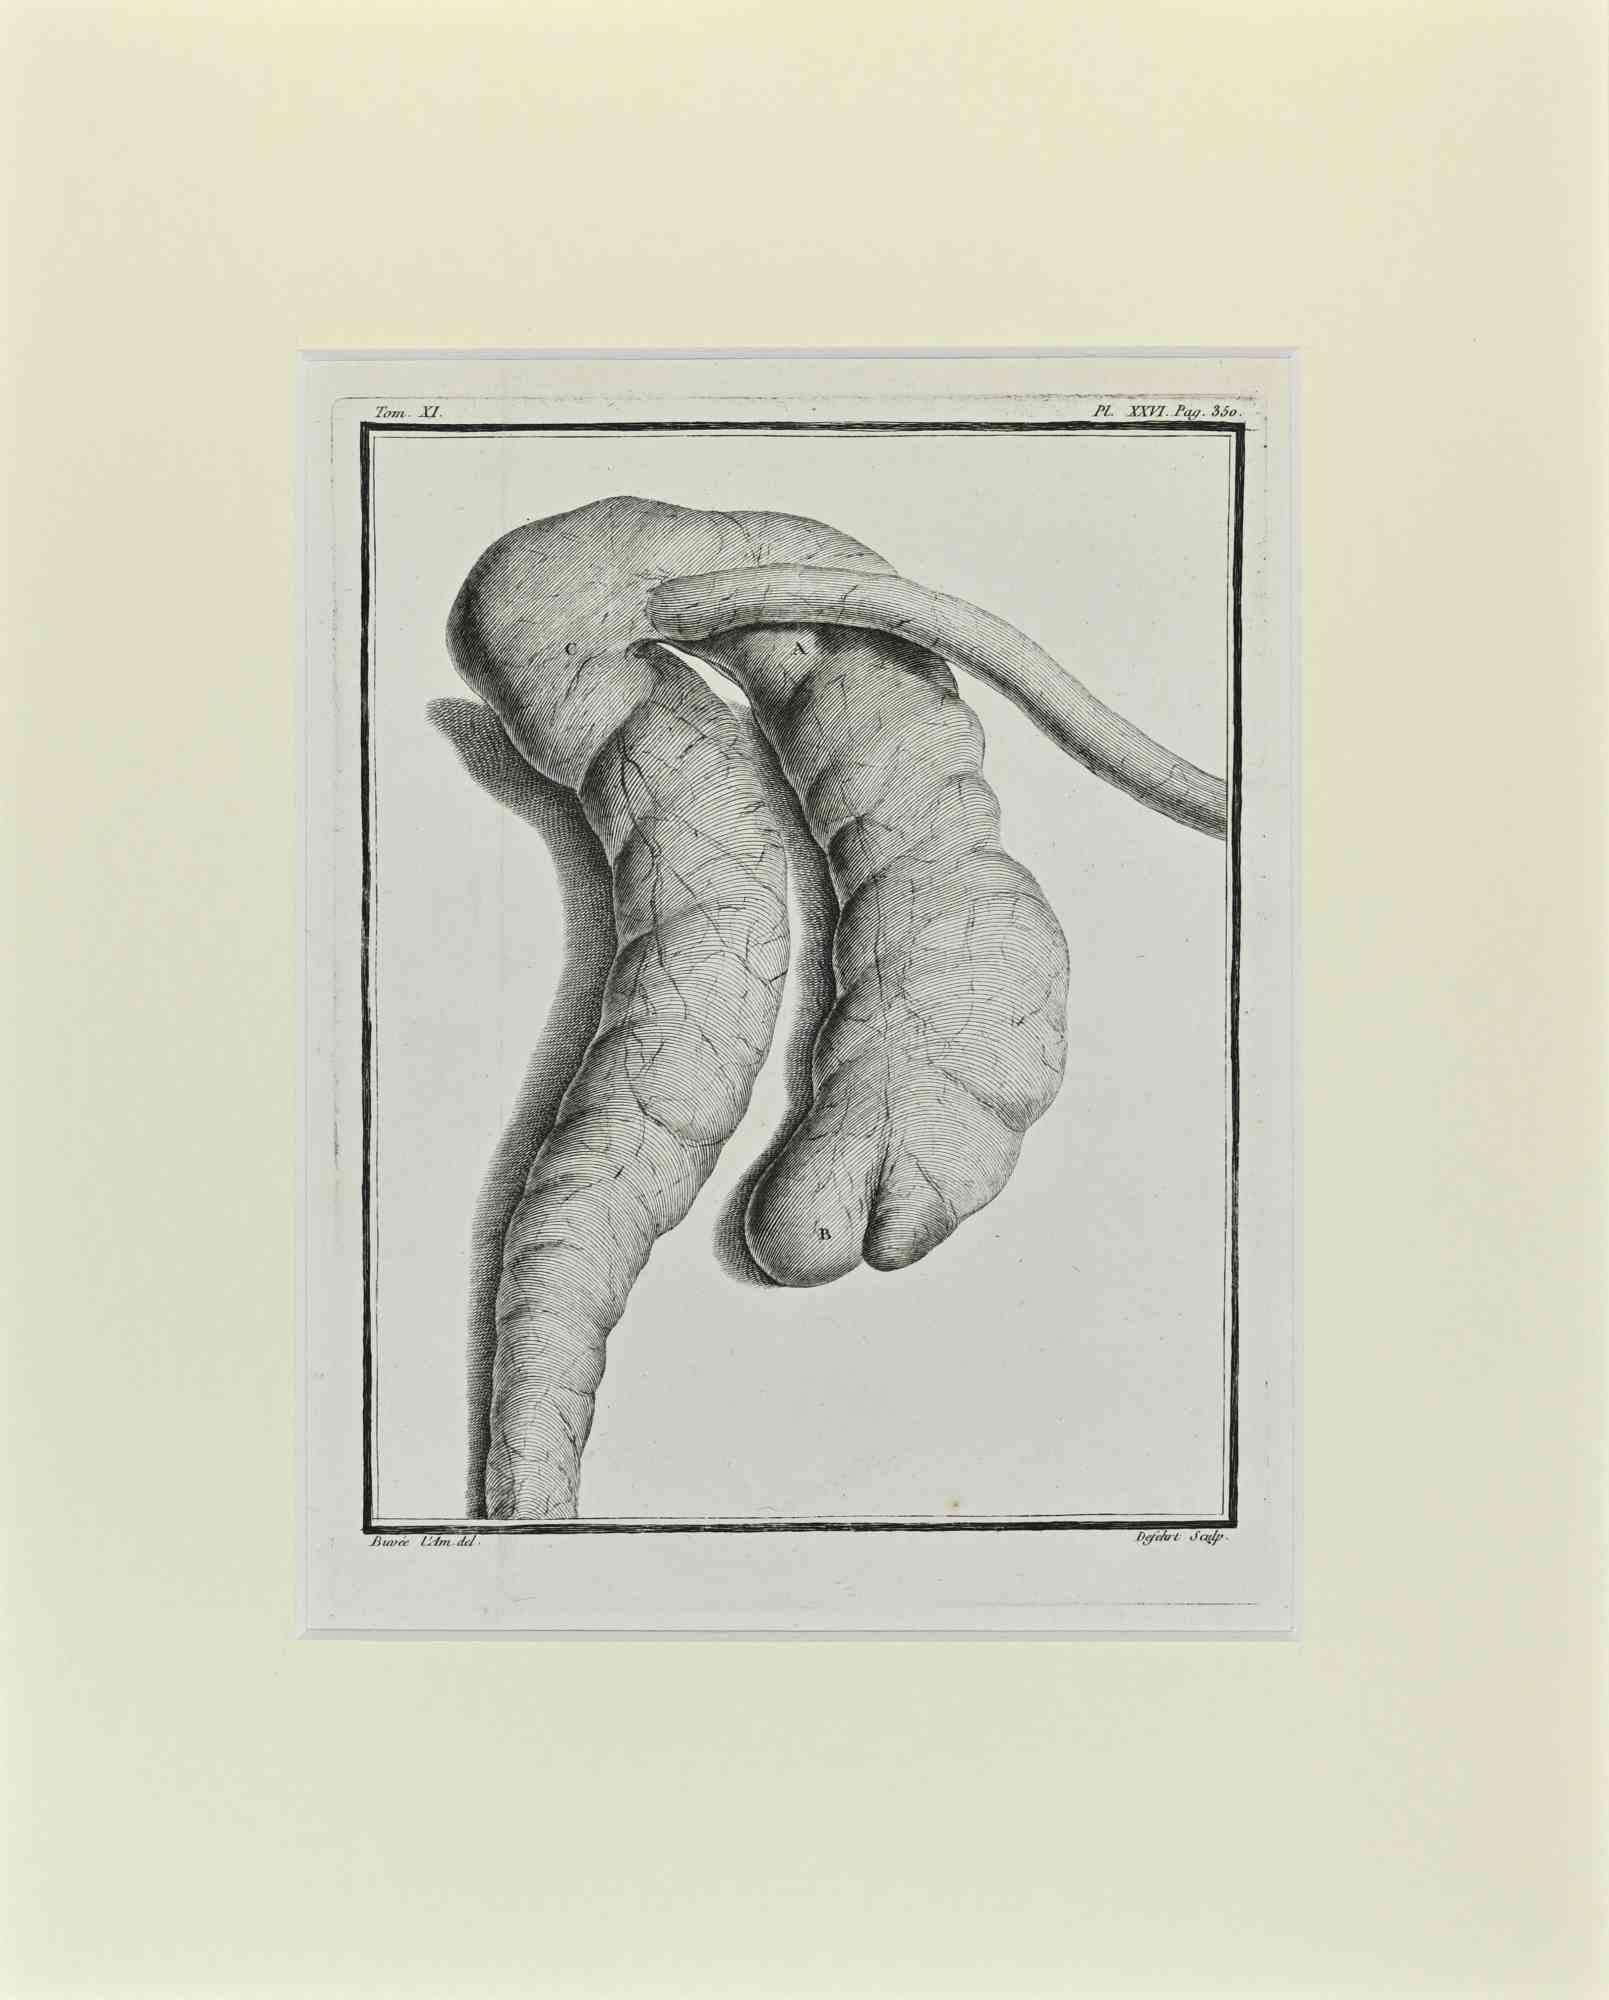 L'anatomie de la chauve-souris est une œuvre d'art réalisée par Buvée l'Américain en 1771.  

Gravure à l'eau-forte B./W. sur papier ivoire. Signé sur la plaque dans la marge inférieure gauche.

L'œuvre est collée sur du carton. Dimensions totales :